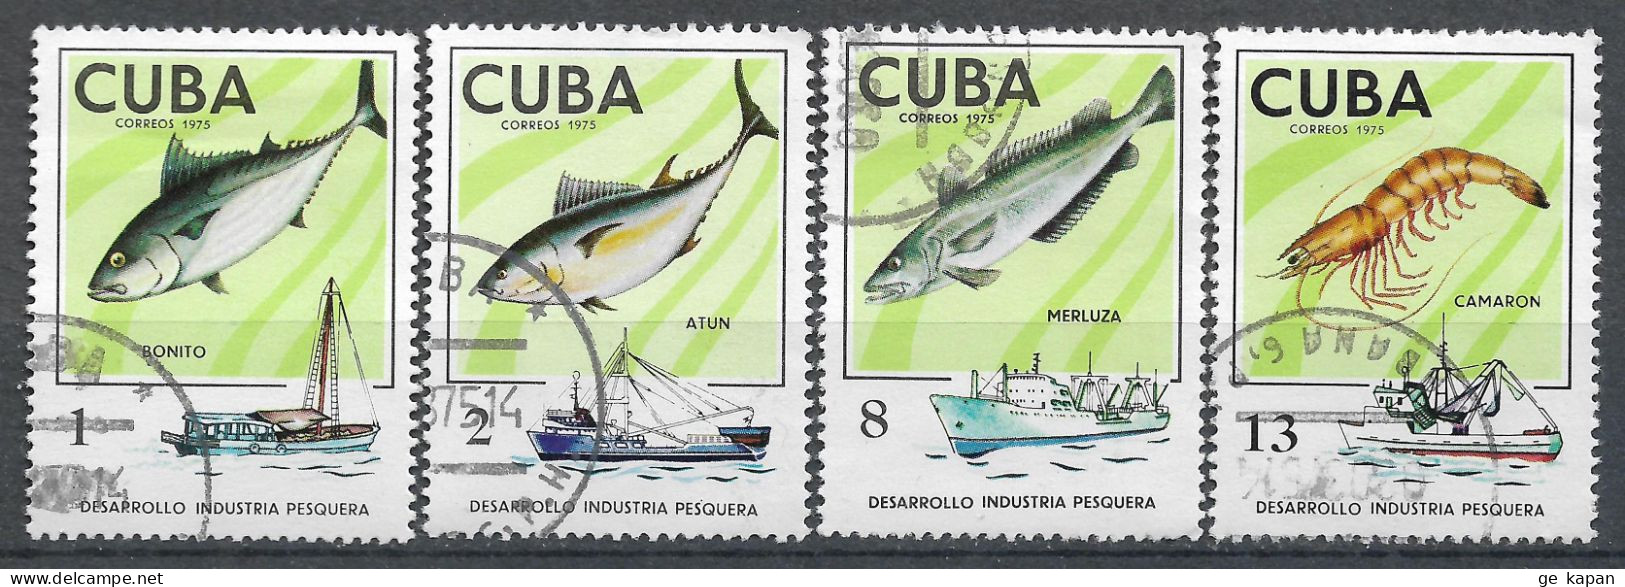 1975 CUBA Set Of 4 Used Stamps (Michel # 2030,2031,2033,2035) CV €1.80 - Gebruikt